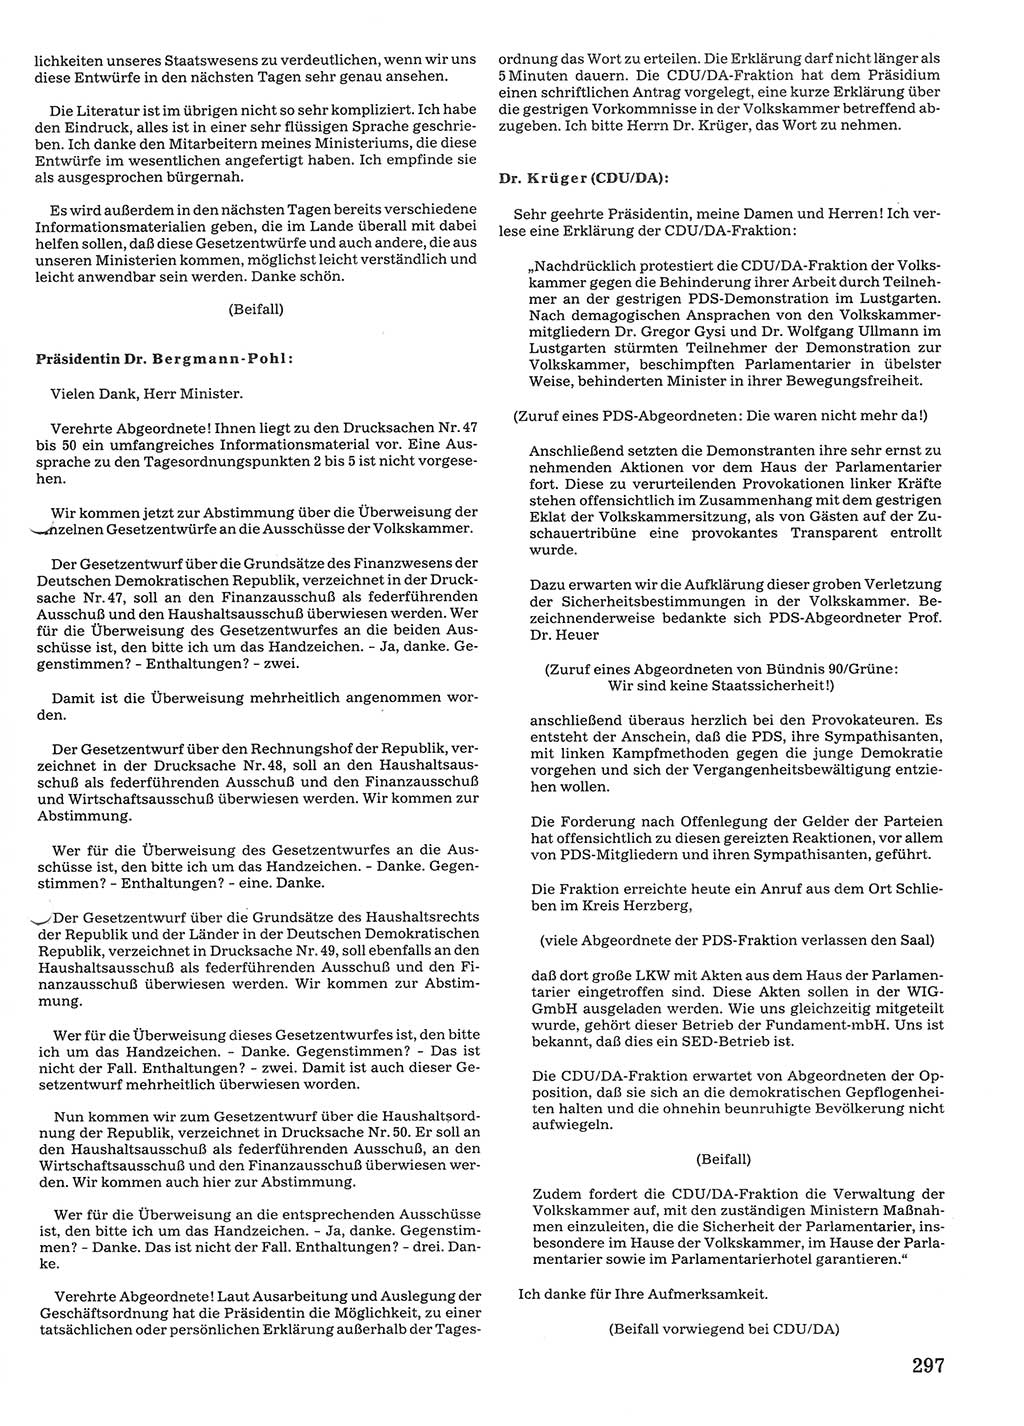 Tagungen der Volkskammer (VK) der Deutschen Demokratischen Republik (DDR), 10. Wahlperiode 1990, Seite 297 (VK. DDR 10. WP. 1990, Prot. Tg. 1-38, 5.4.-2.10.1990, S. 297)